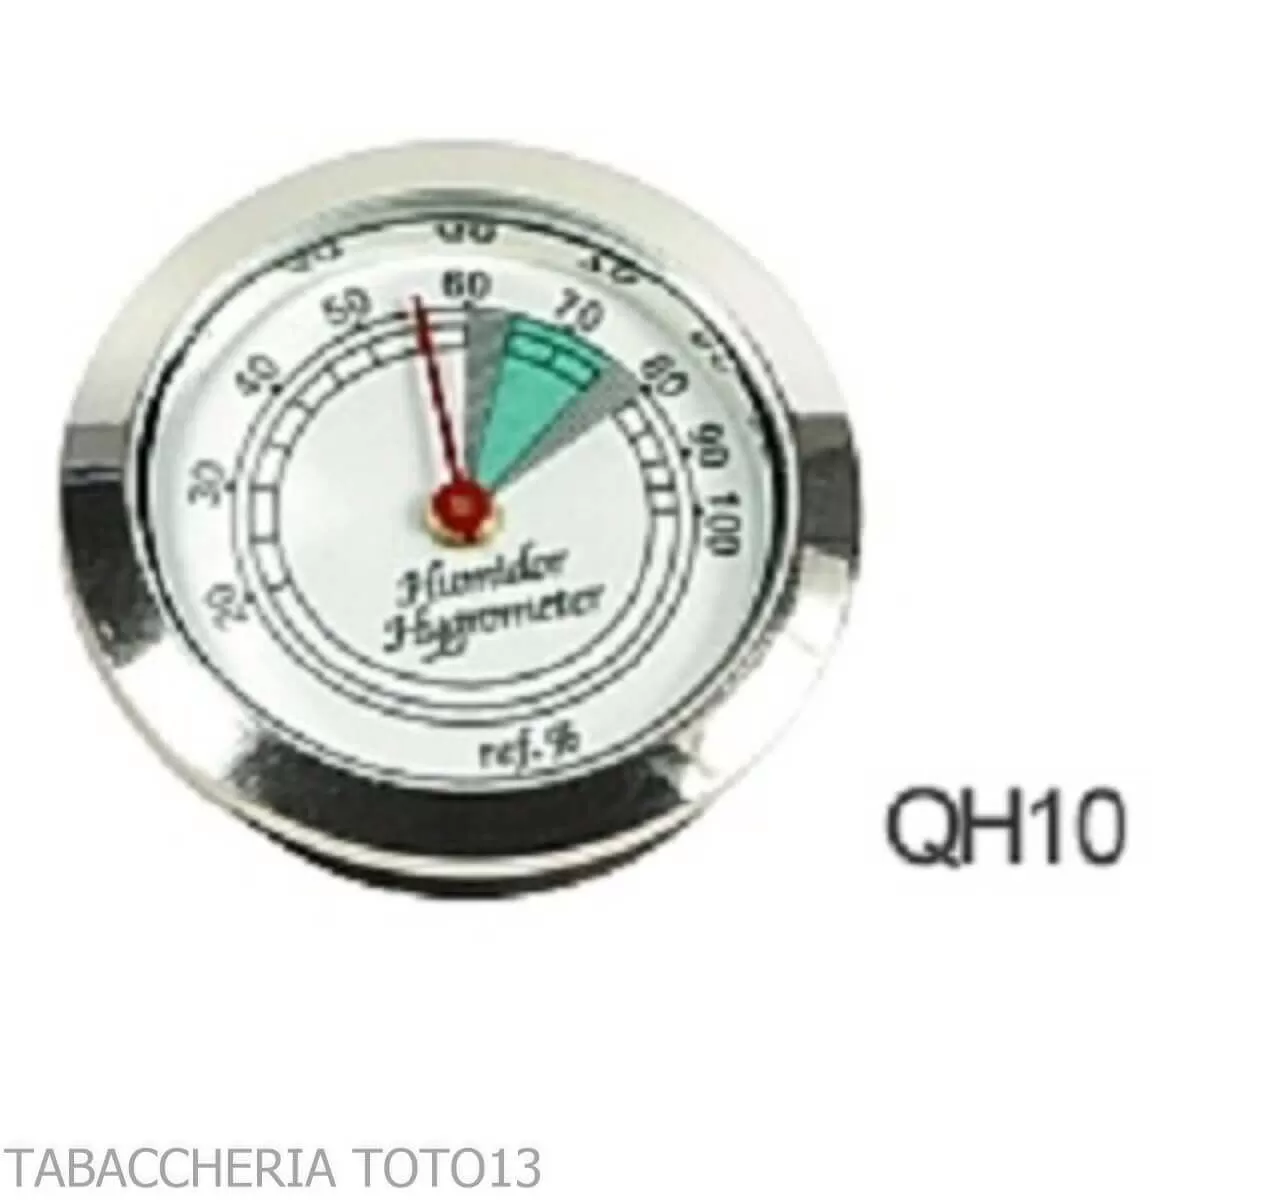 https://tabaccheriatoto13.com/24176/higrometro-analogico-de-37-mm-de-diametro-para-caja-de-puros-humidificada.webp